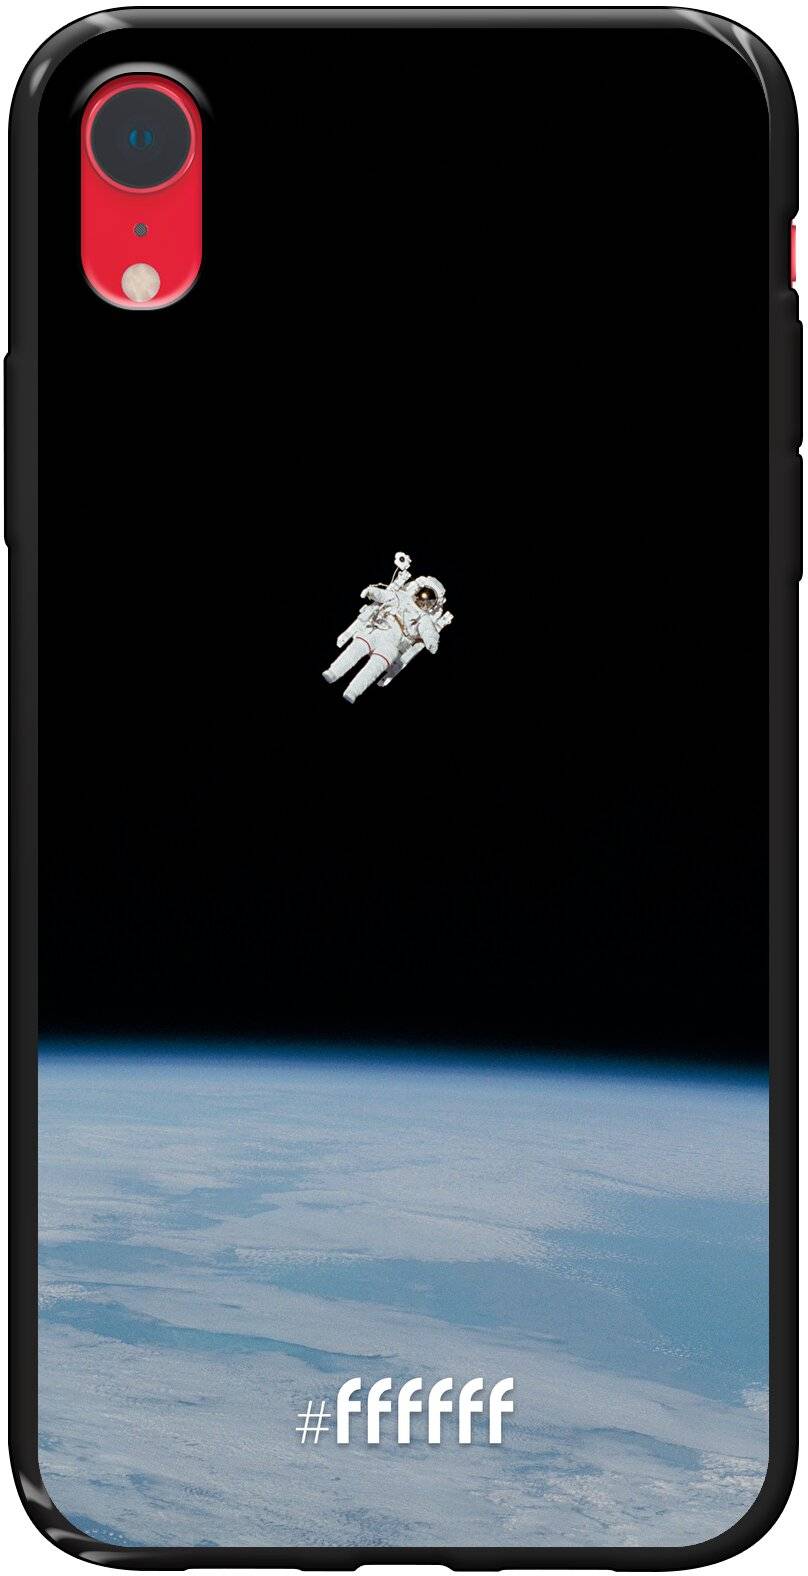 Spacewalk iPhone Xr